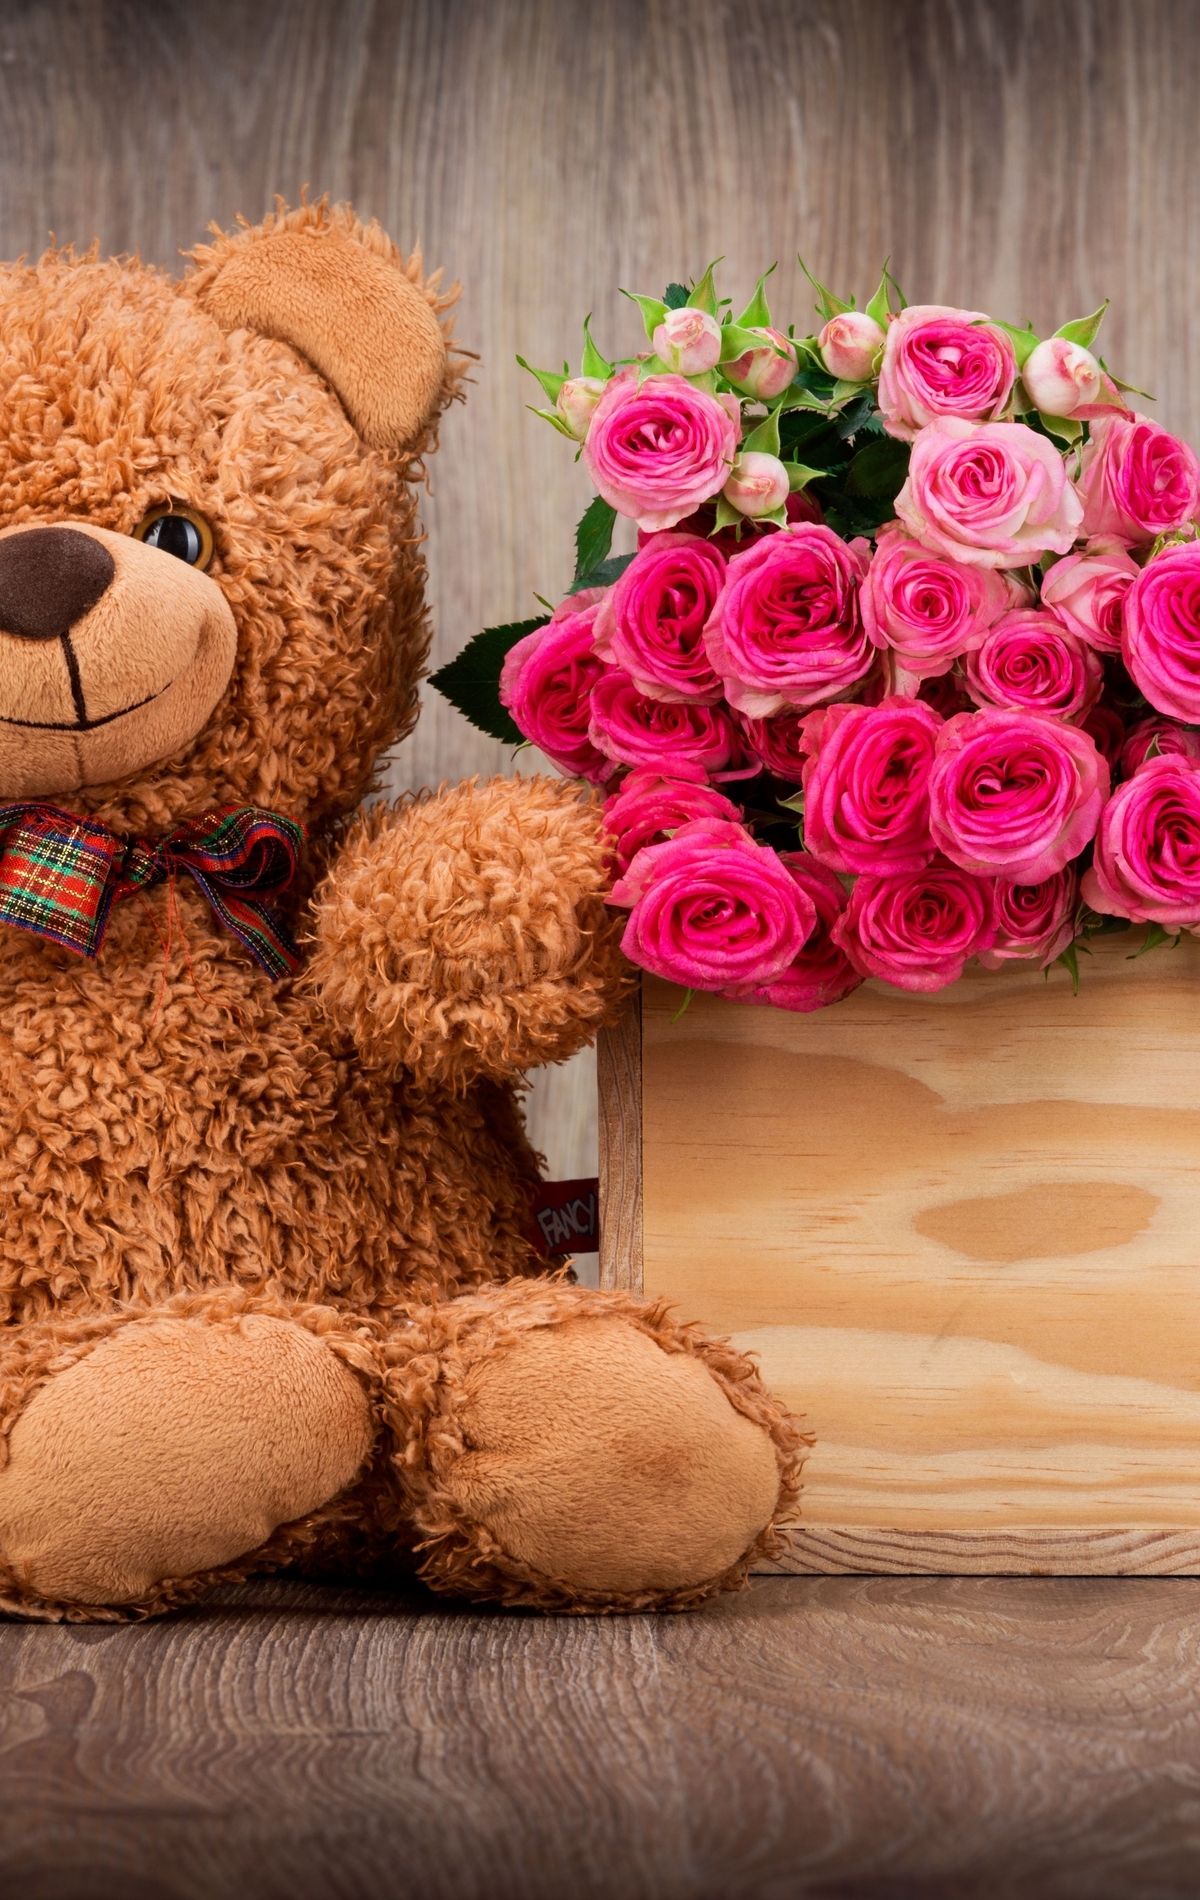 Картинка: Медвежонок, плюшевый, бантик, глаза, игрушка, цветы, розы, букет, коробка, день рождения, праздник, настроение